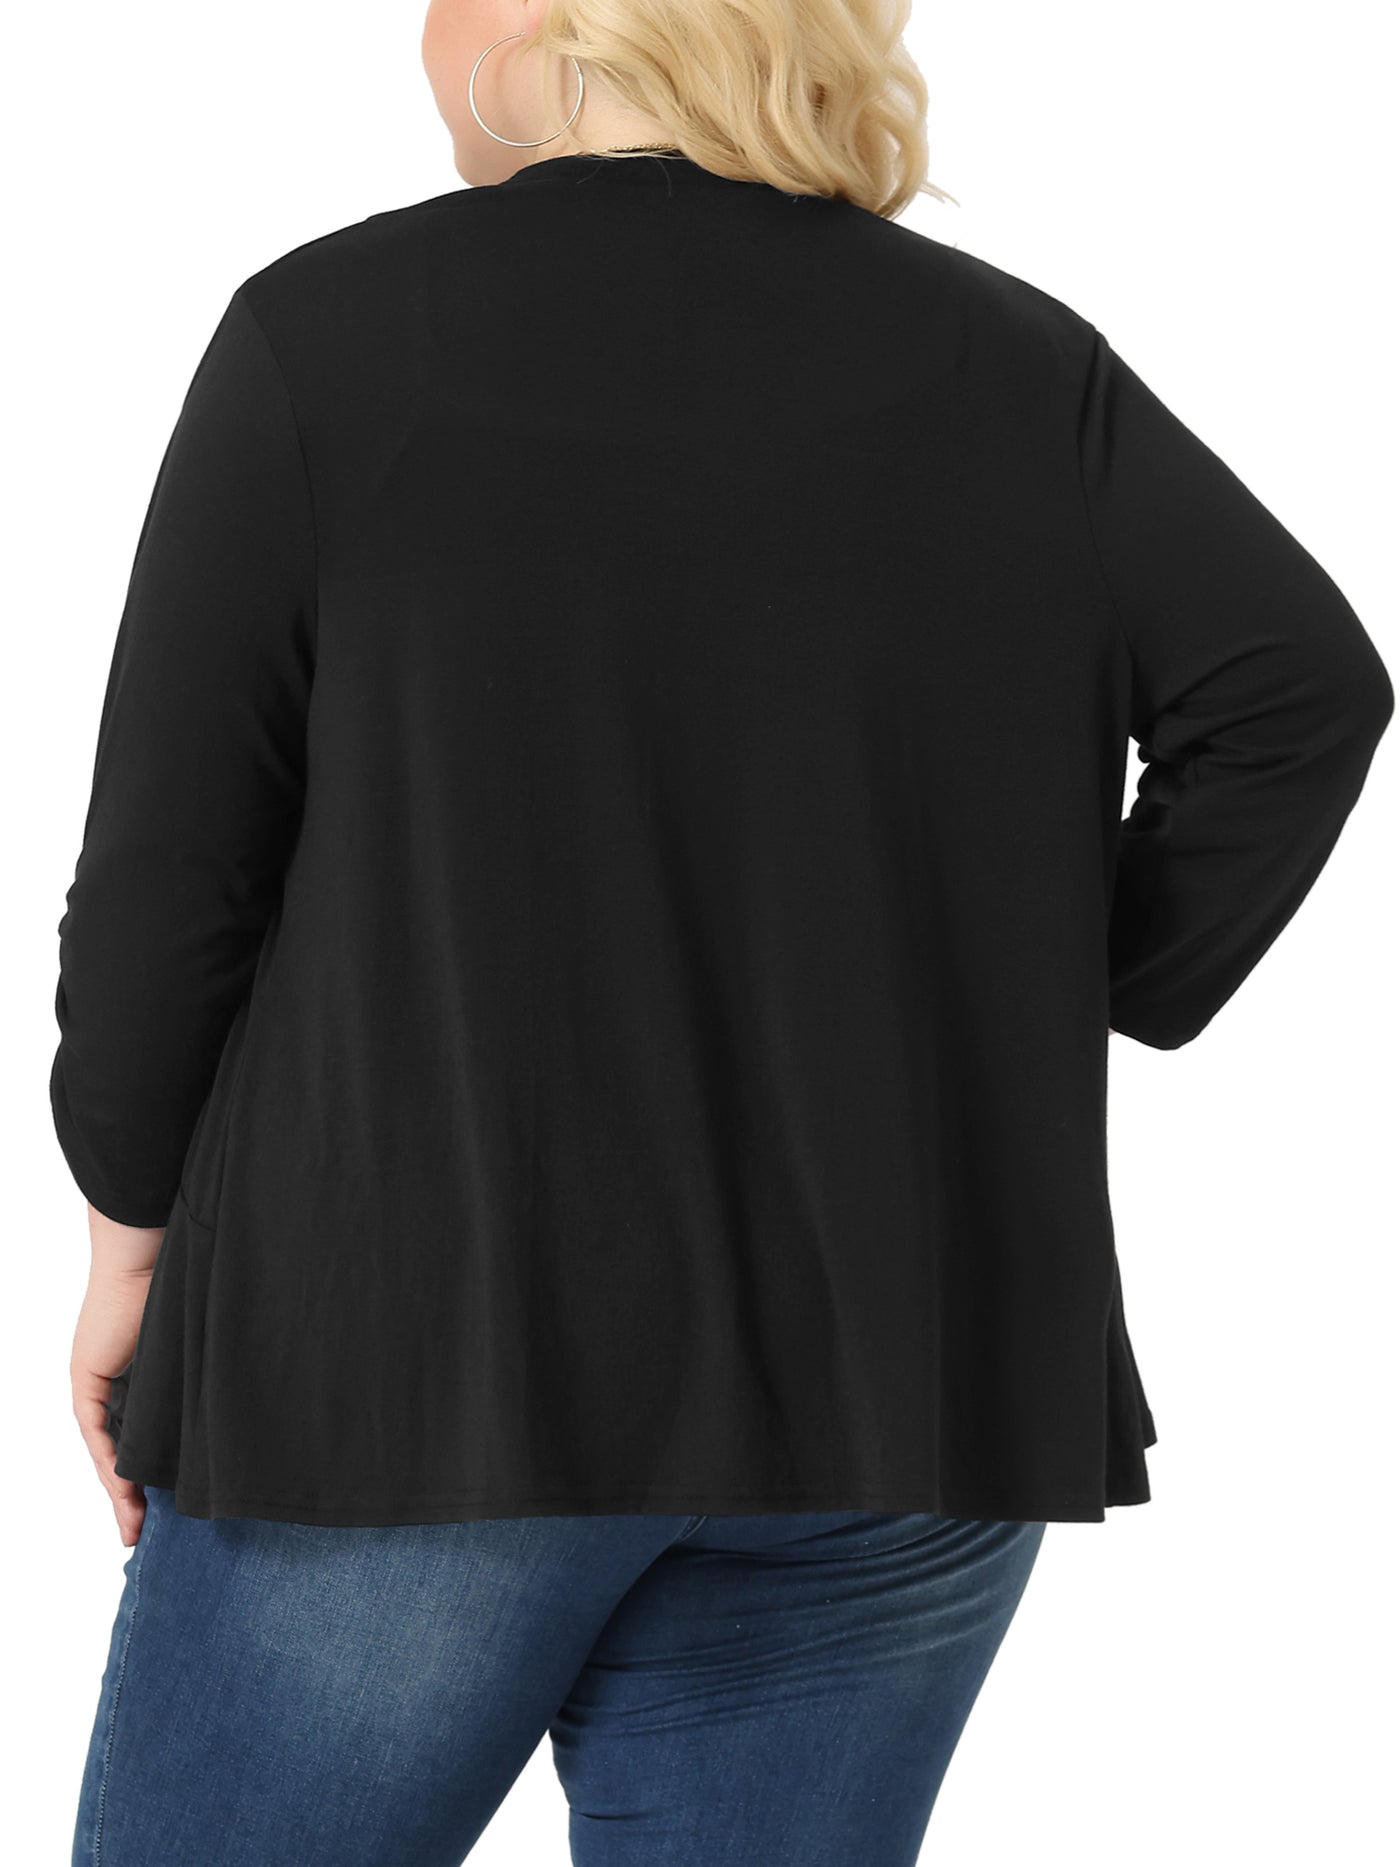 Bublédon Plus Size Cardigan for Women Soft 3/4 Sleeve Open Front Cropped Shrug Bolero Cardigans Jacket